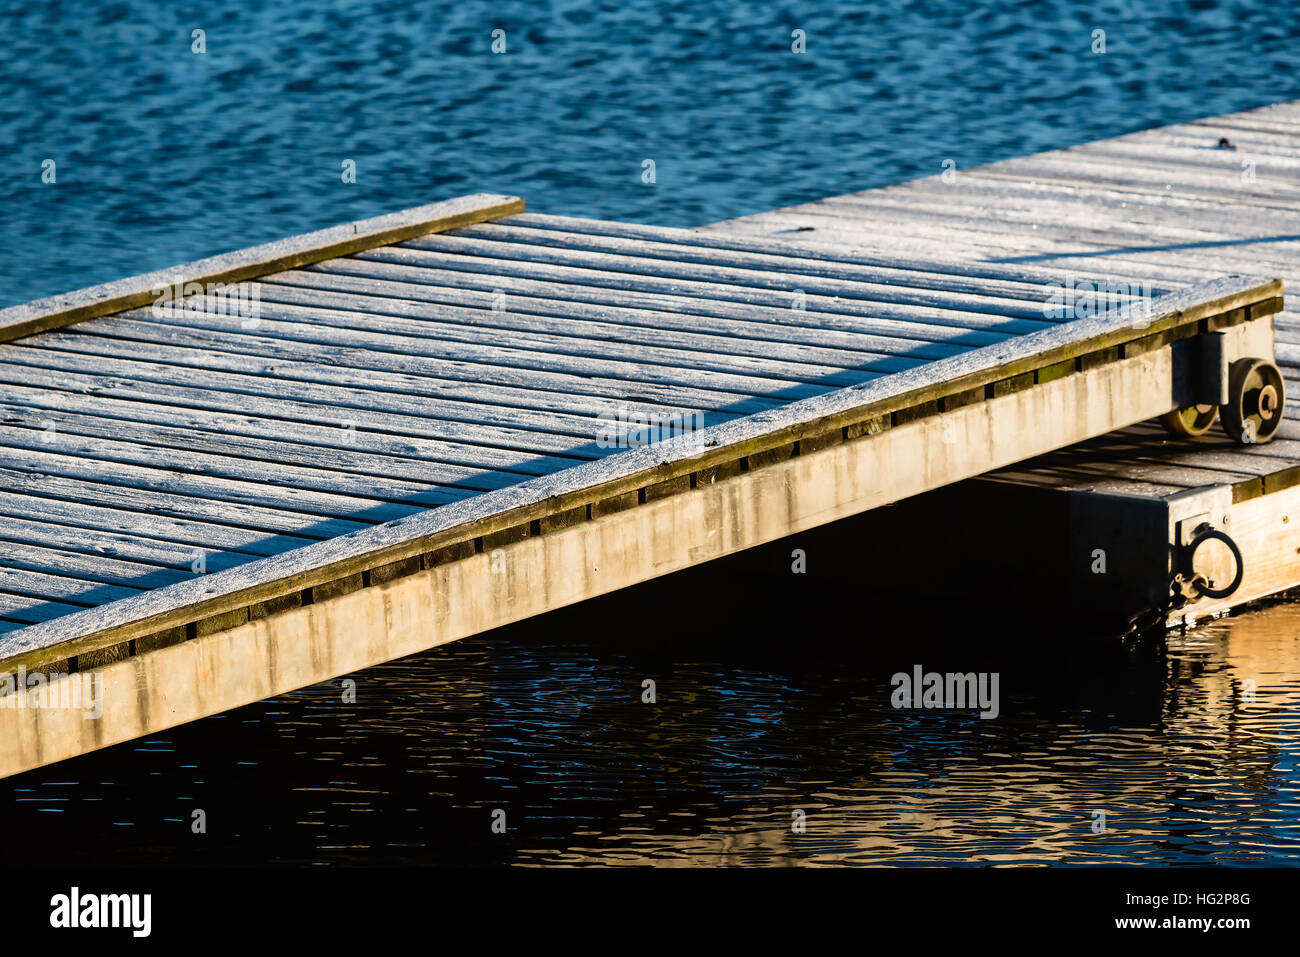 Kalter Morgen am Meer. Frost bedecken die hölzerne Pier Überlappung, die Bewegung ermöglicht wie der Schwimmsteg bewegt sich mit wechselnden Wasserständen. Stockfoto